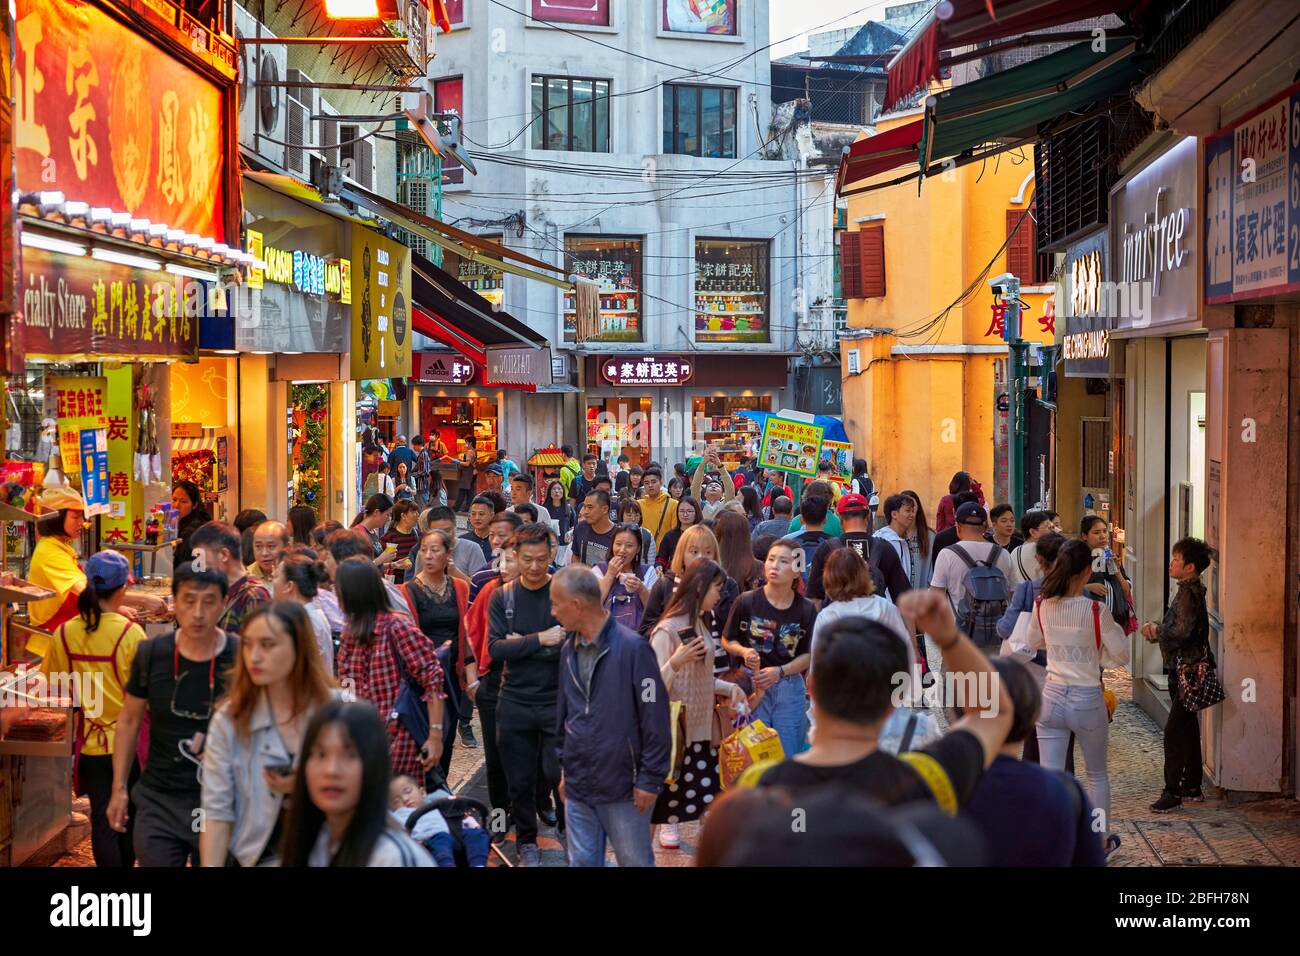 Une foule dense de touristes marchant dans une rue étroite dans le quartier historique de Macao, Chine. Banque D'Images